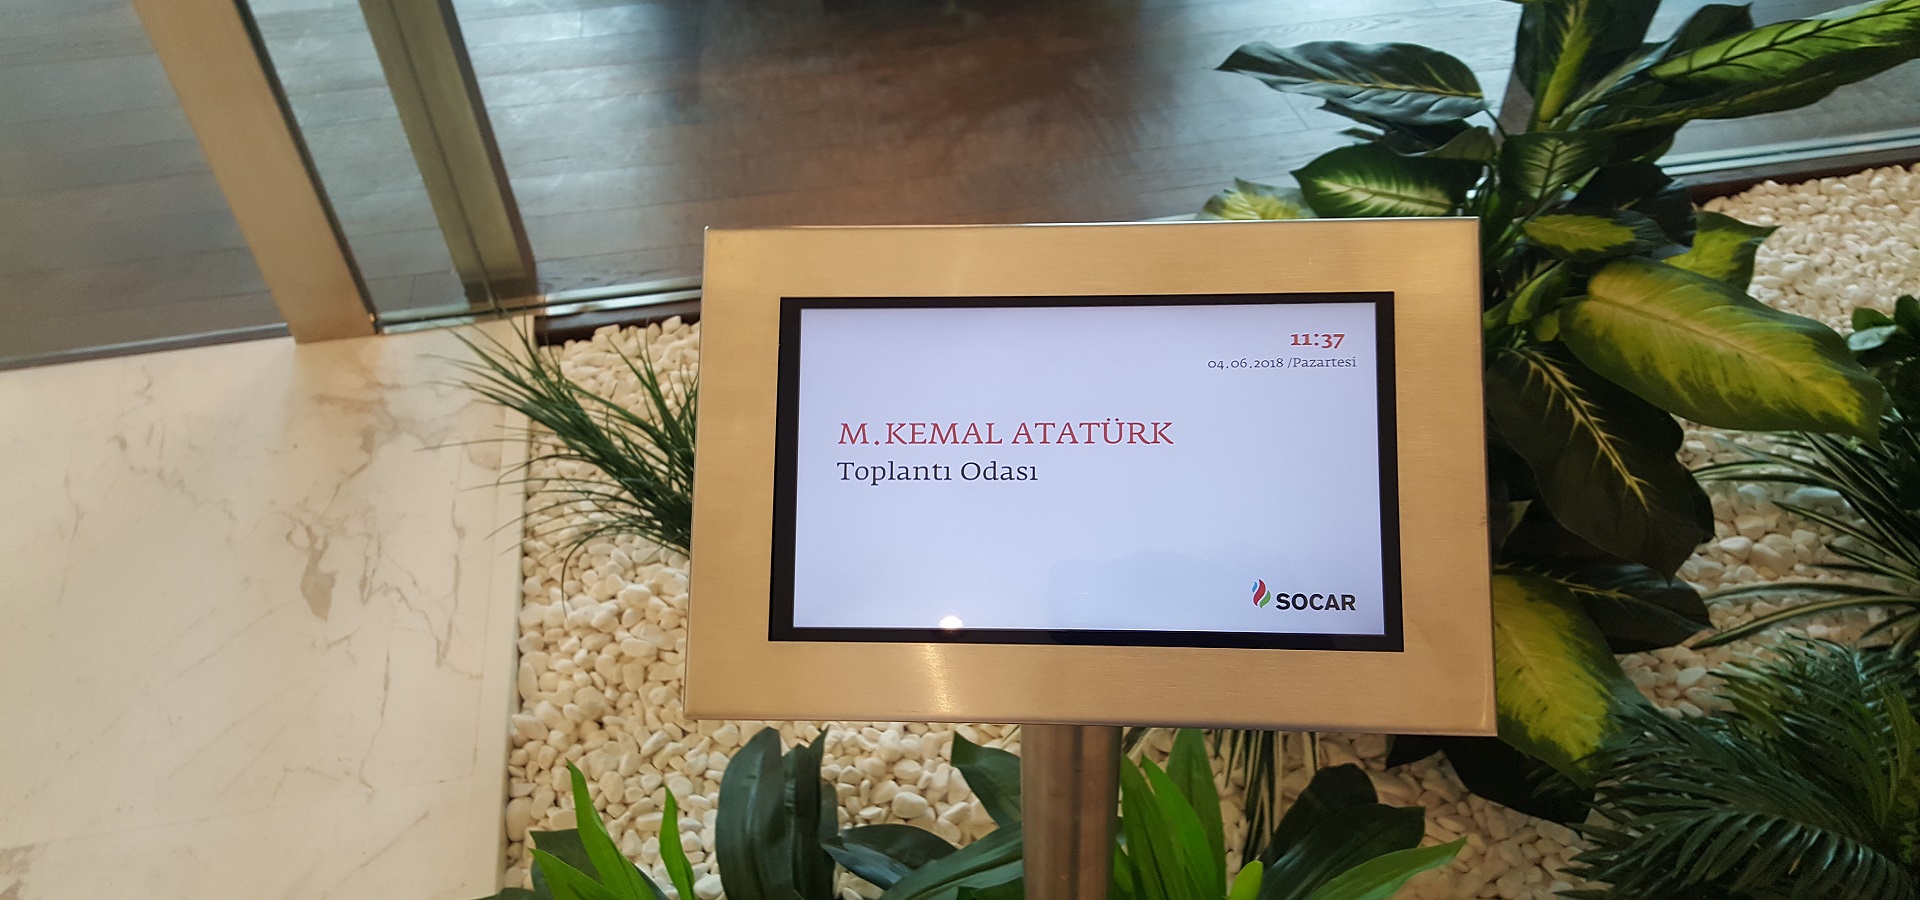 Socar Vadi İstanbul Genel Müdürlük Binası Toplantı Rezervasyon Yönetim Sistemi 